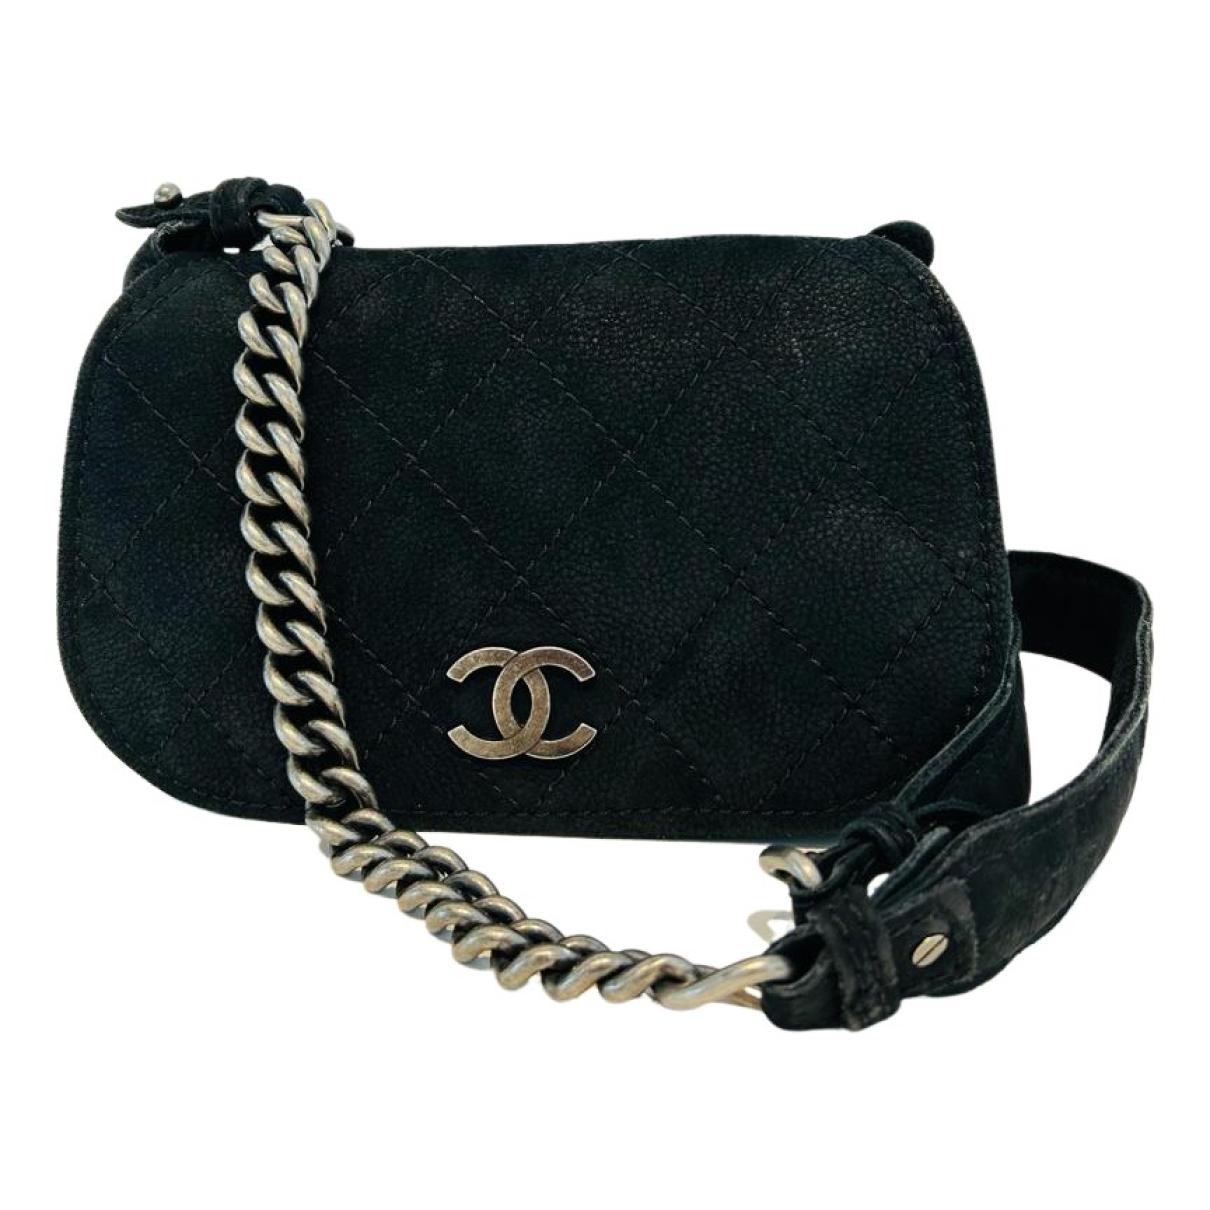 Crossbody bag Chanel Black in Suede - 31625328